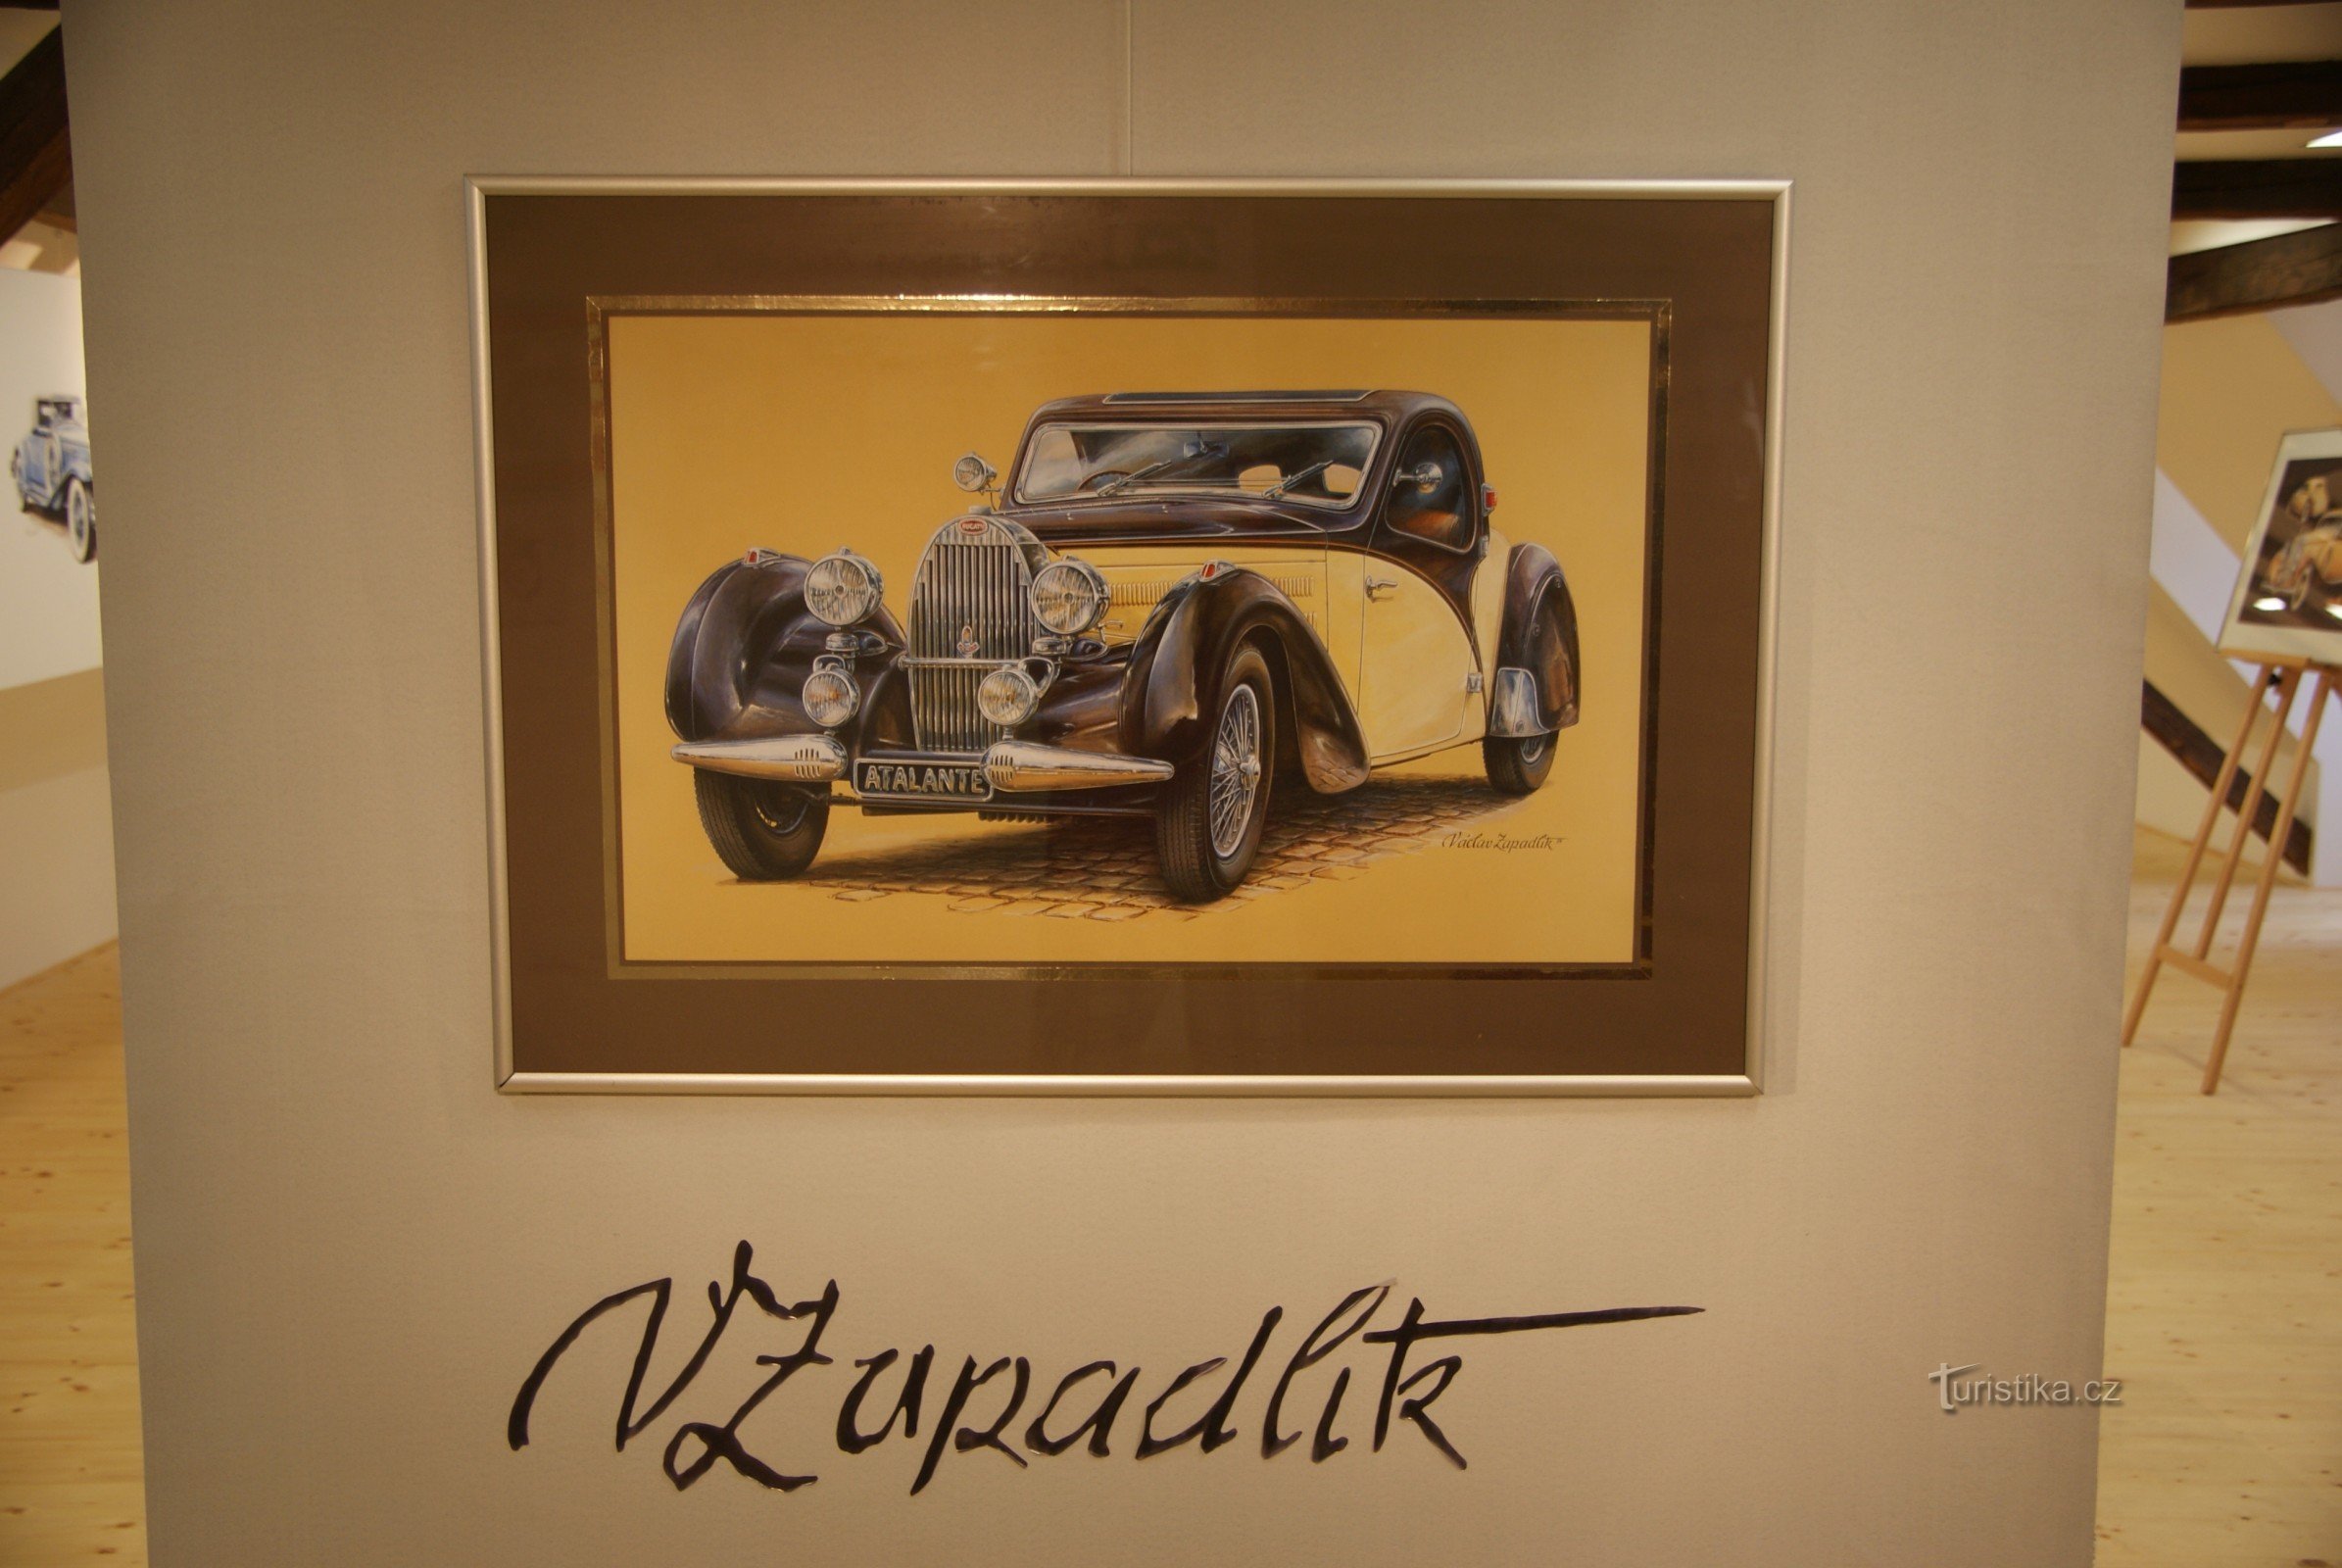 exhibition "Images of the automotive world" by Václav Zapadlík